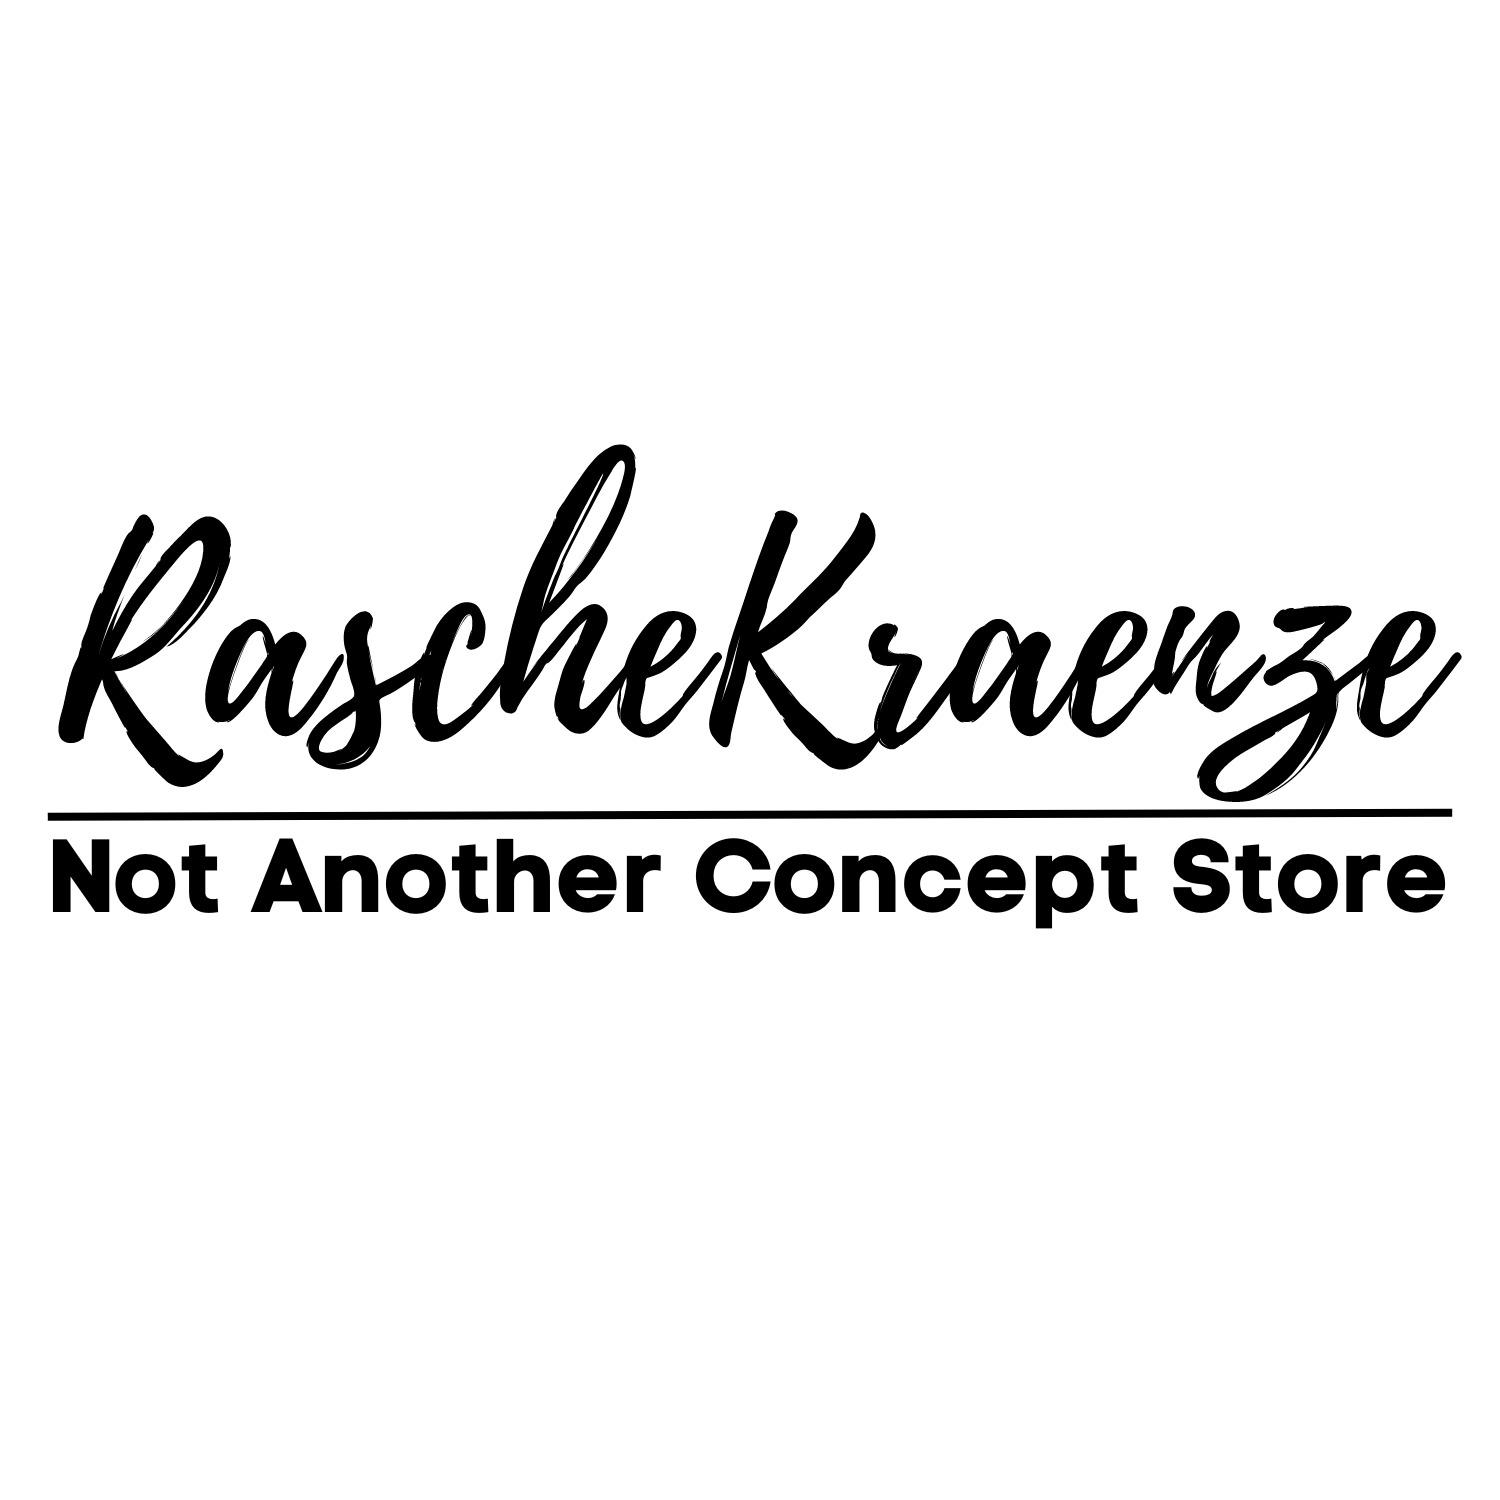 RascheKraenze - Not Another Concept Store Inh. Pia Rasch in Essen - Logo